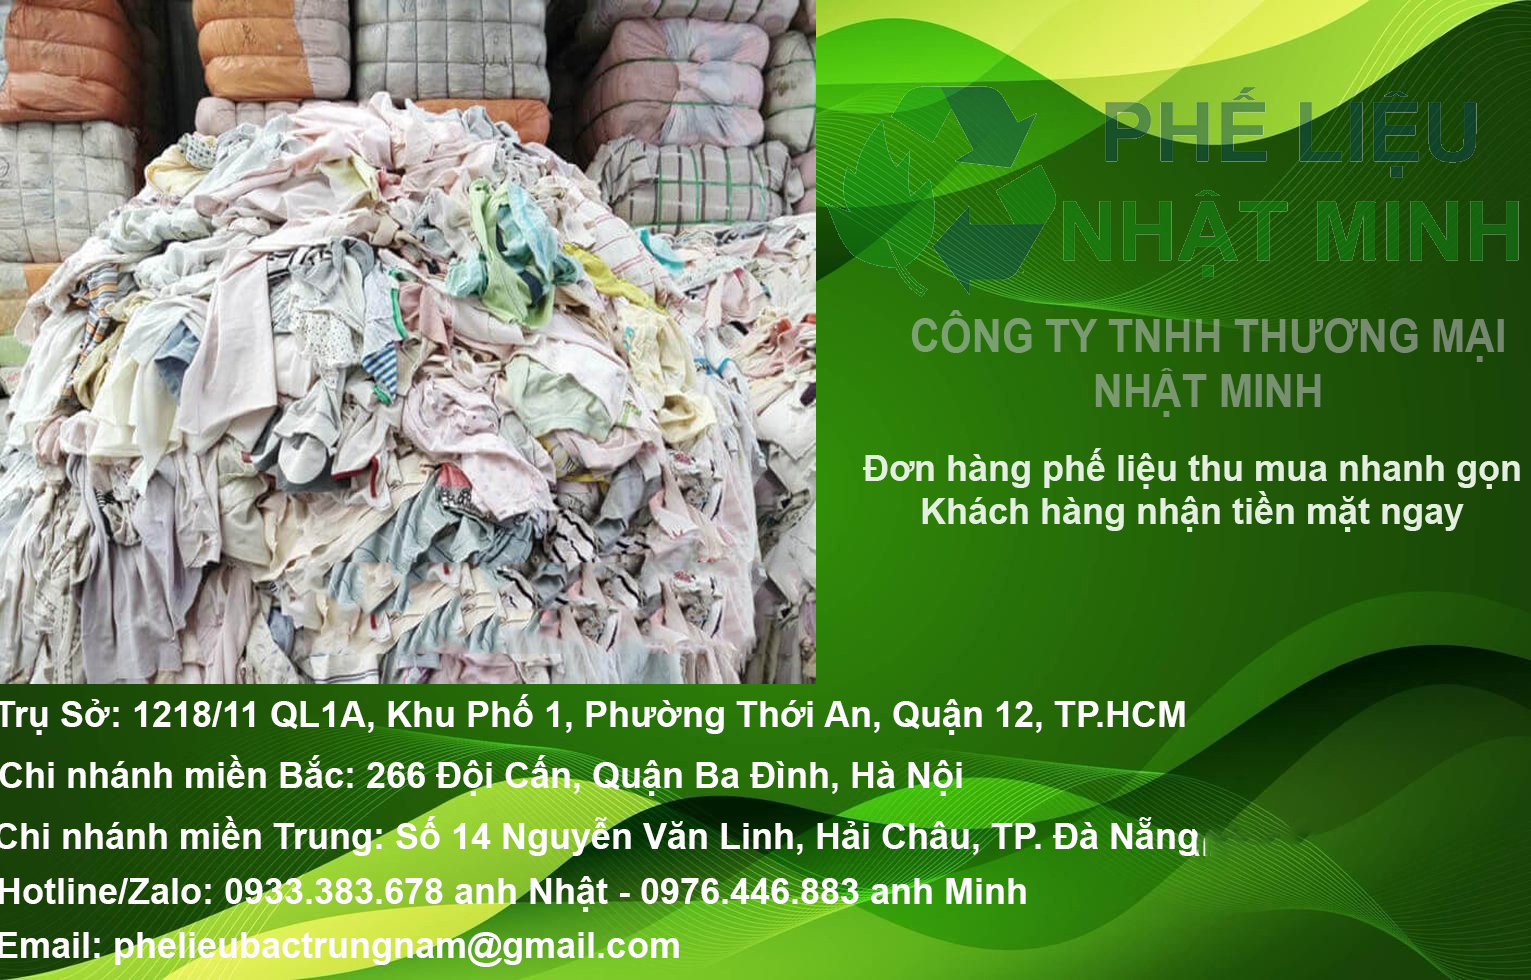 Cơ sở thu mua phế liệu sắt, đồng, nhôm, inox, nhựa KCN Lộc An – Bình Sơn